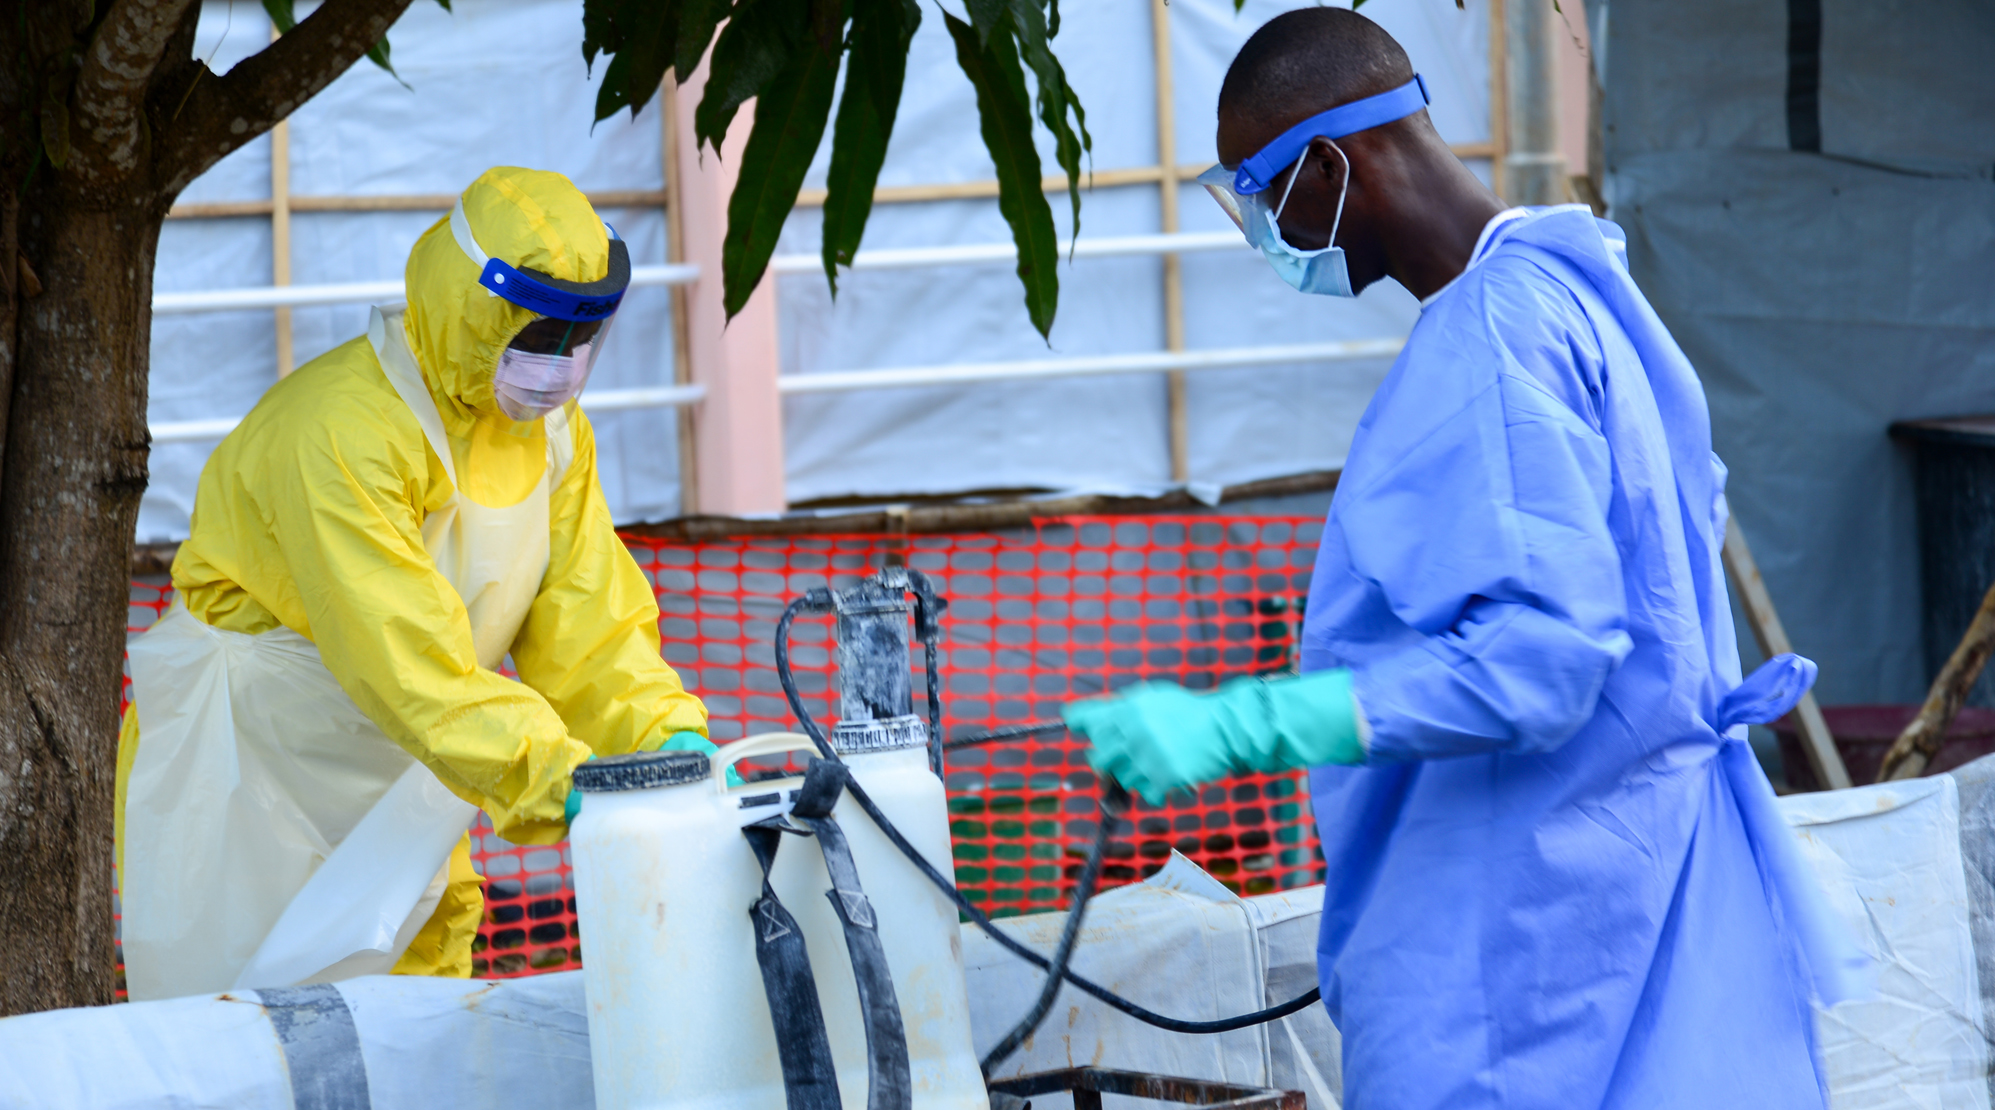 Gesundheitspersonal desinfiziert sich in einer medizinischen Einrichtung in Sierra Leone